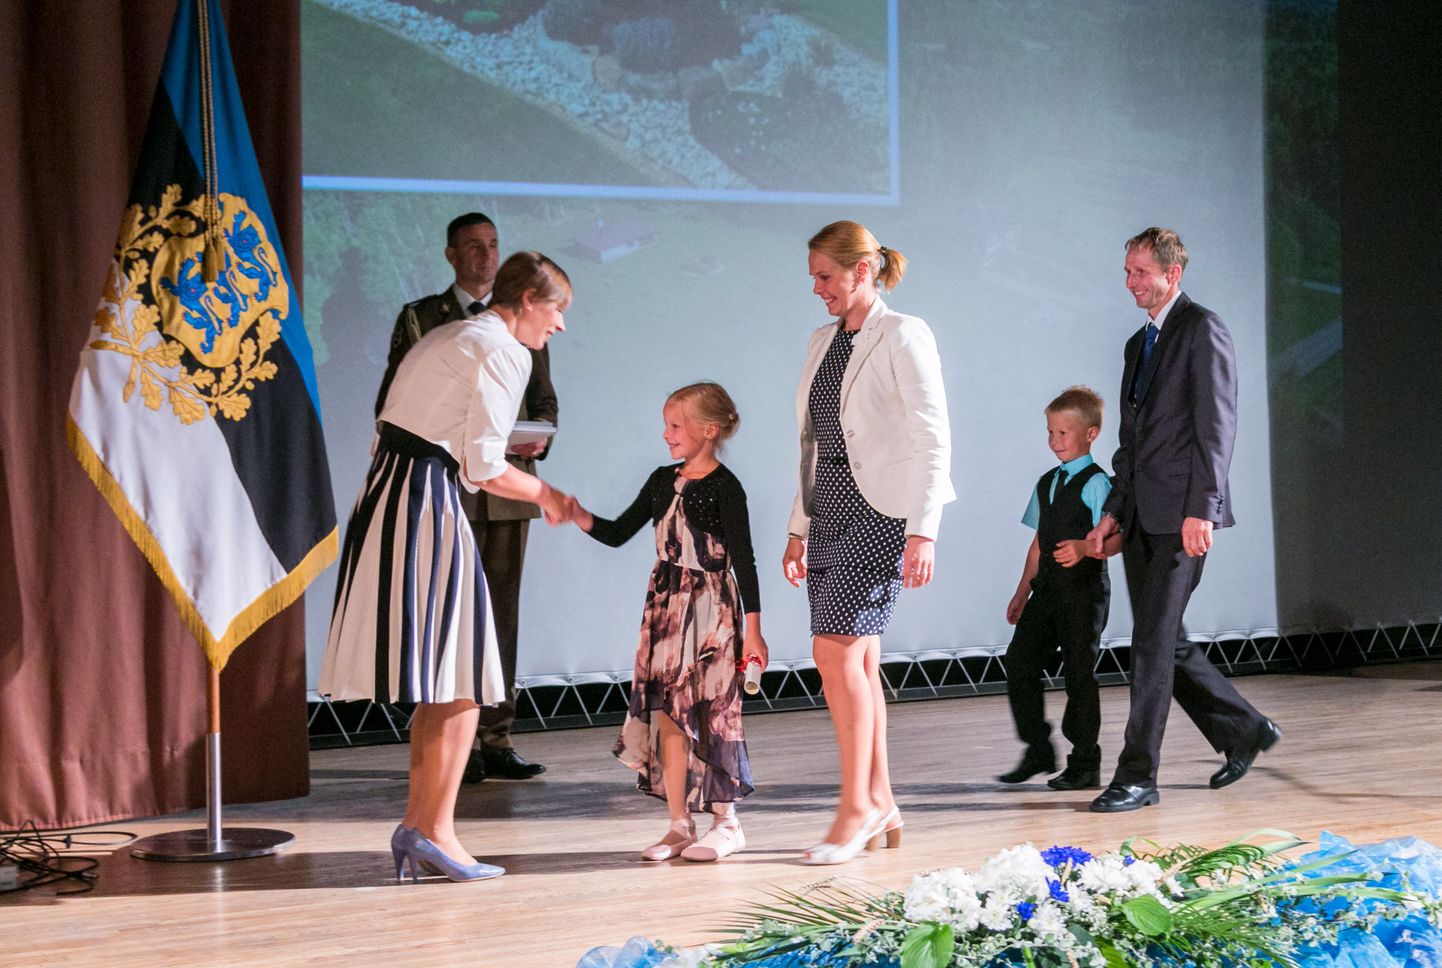 Kristi ja Olari Kõivu pere Otepää vallast Sihva külast käis samuti presidendilt tänusõnu vastu võtmas. Tütar tegi riigipeale kingituse: enda joonistatud pilt oma kodust.